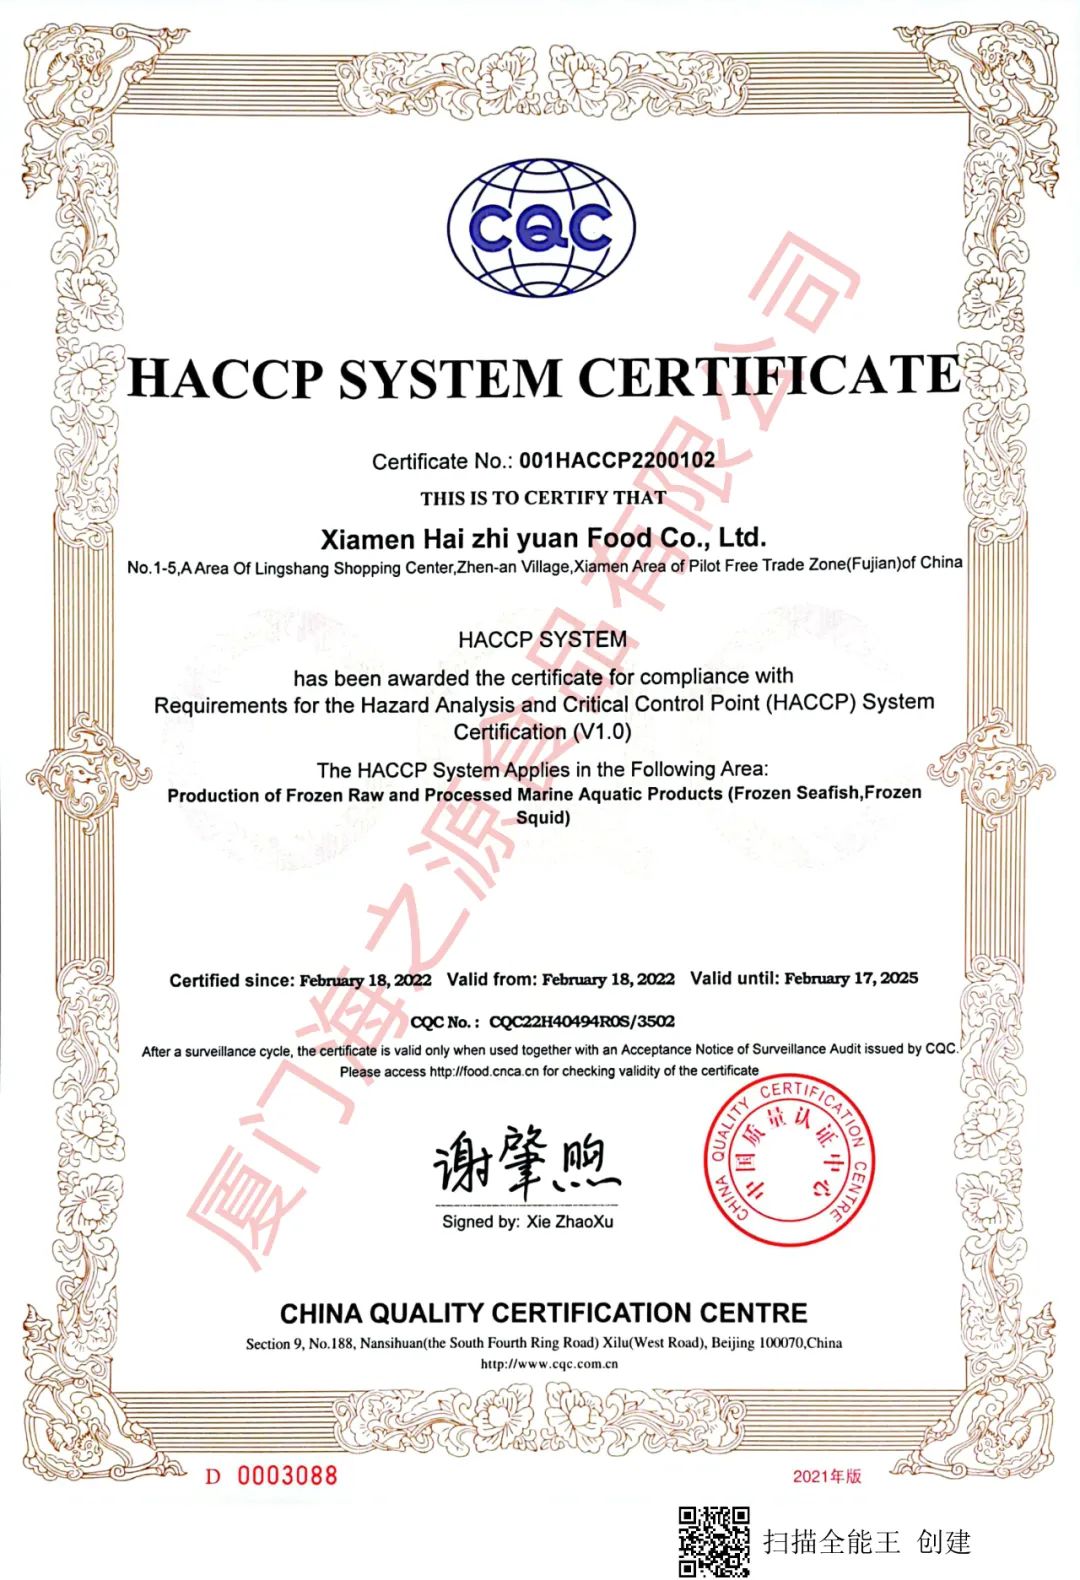 We Got HACCP Cert